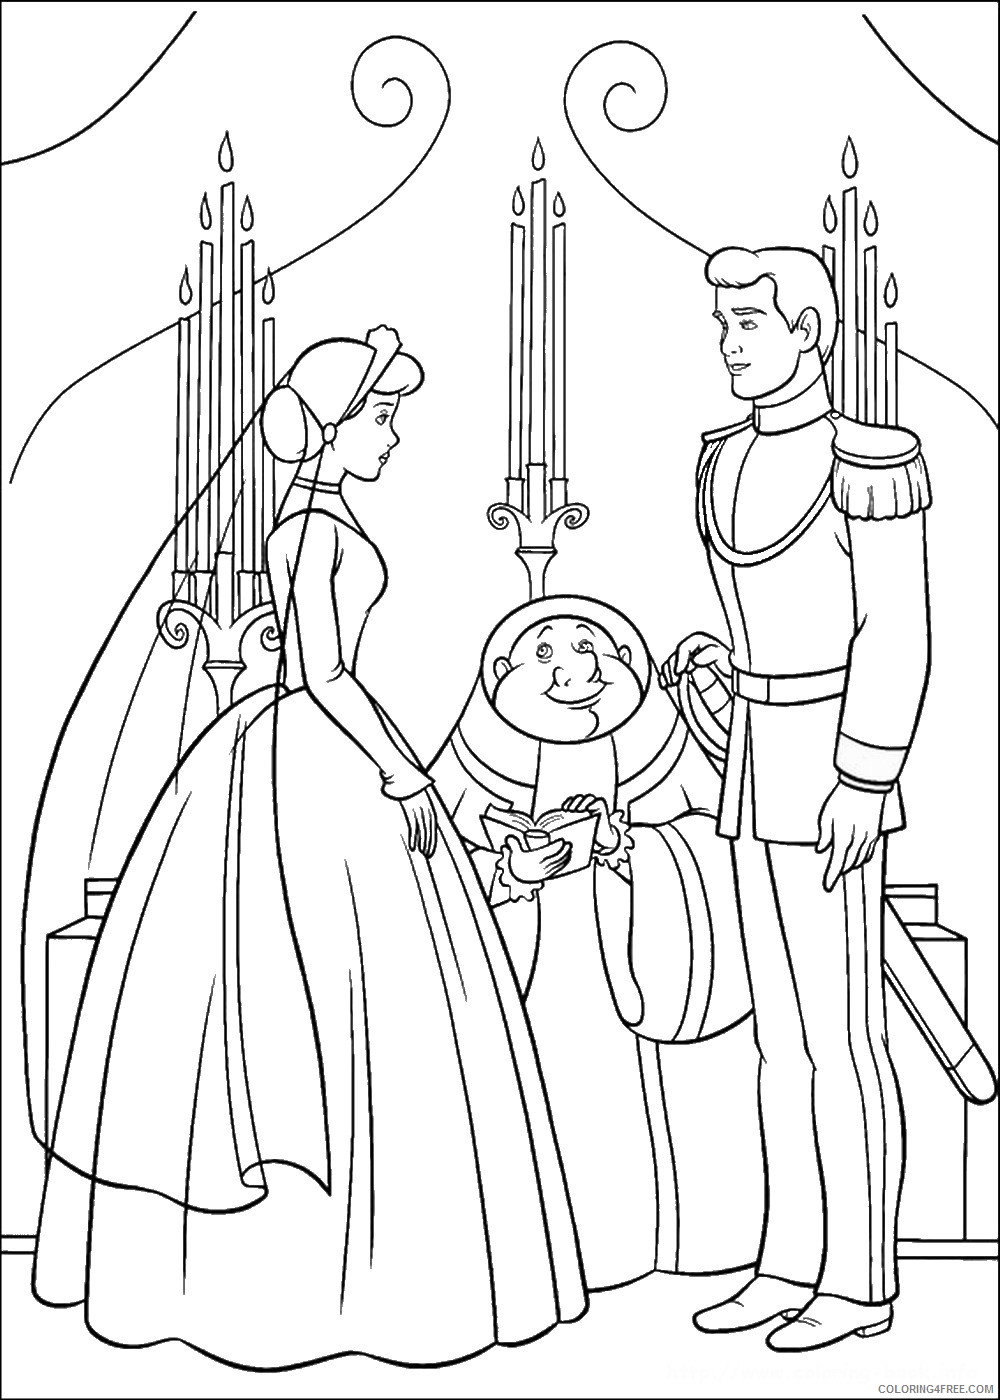 Cinderella Coloring Pages Cartoons cinderella_cl_079 Printable 2020 1736 Coloring4free